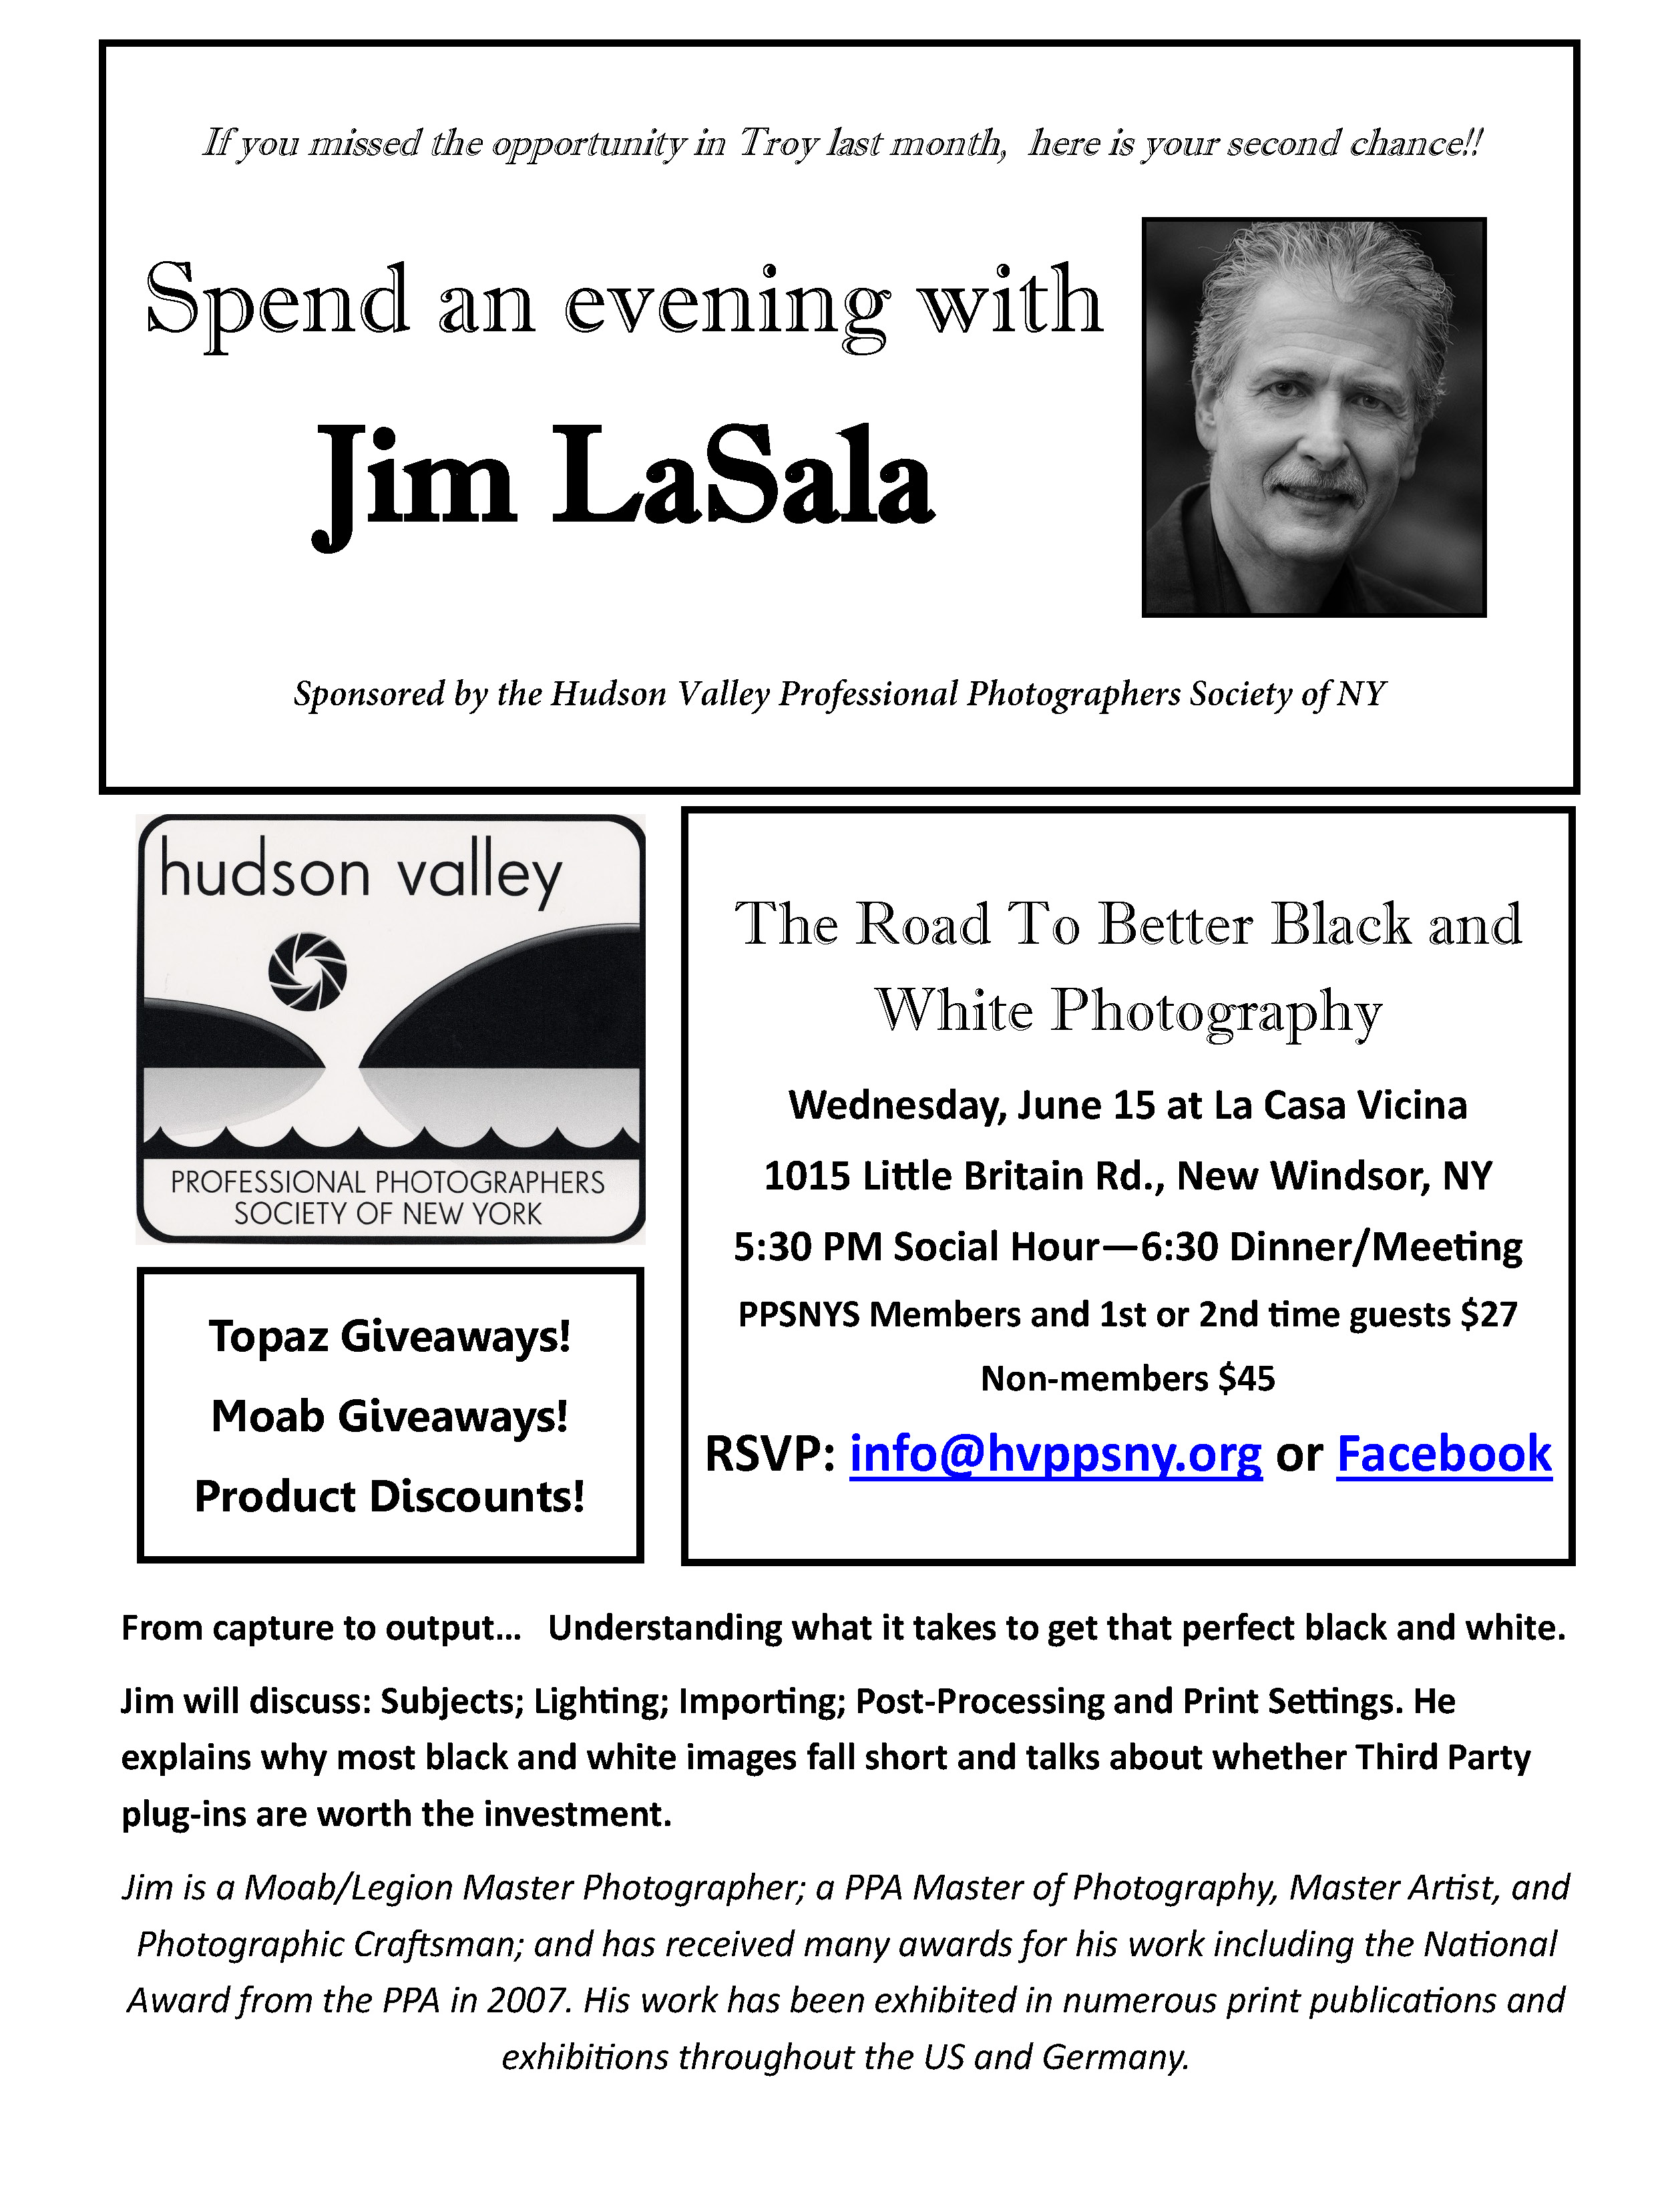 HVPPSNY presents Jim LaSala